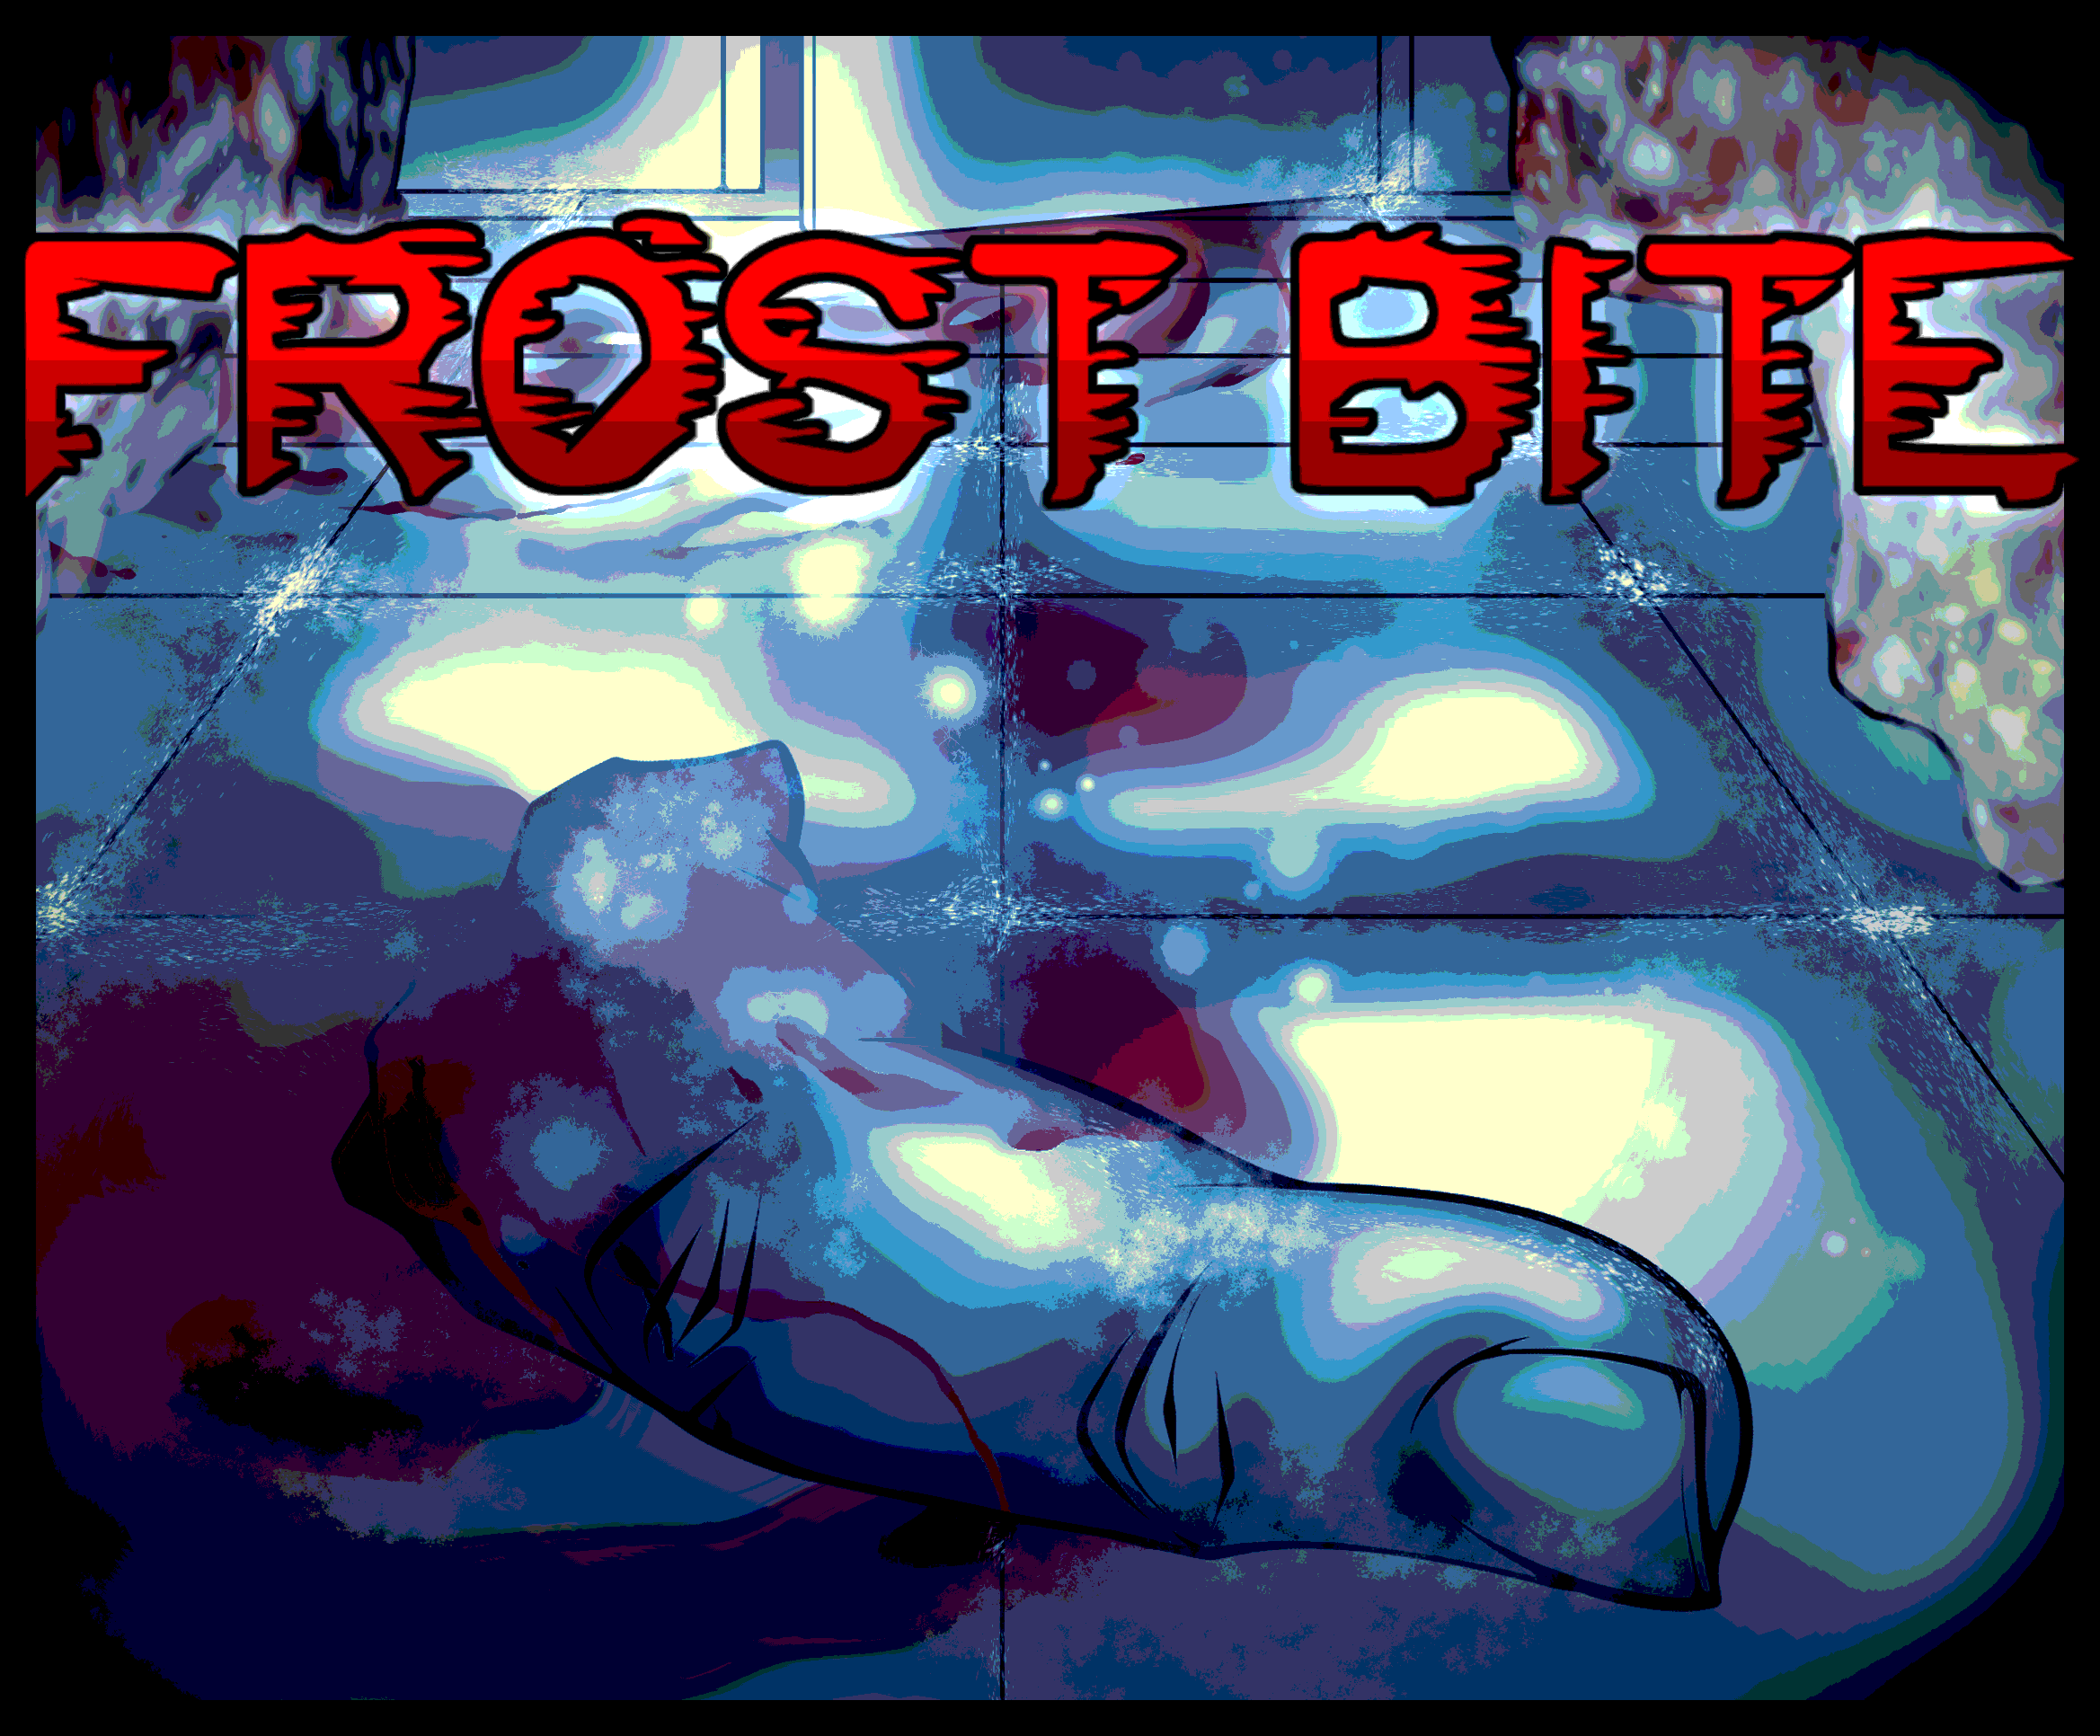 FROST BITE is a Horror Game from JOHN DOE developer - FULL GAMEPLAY 